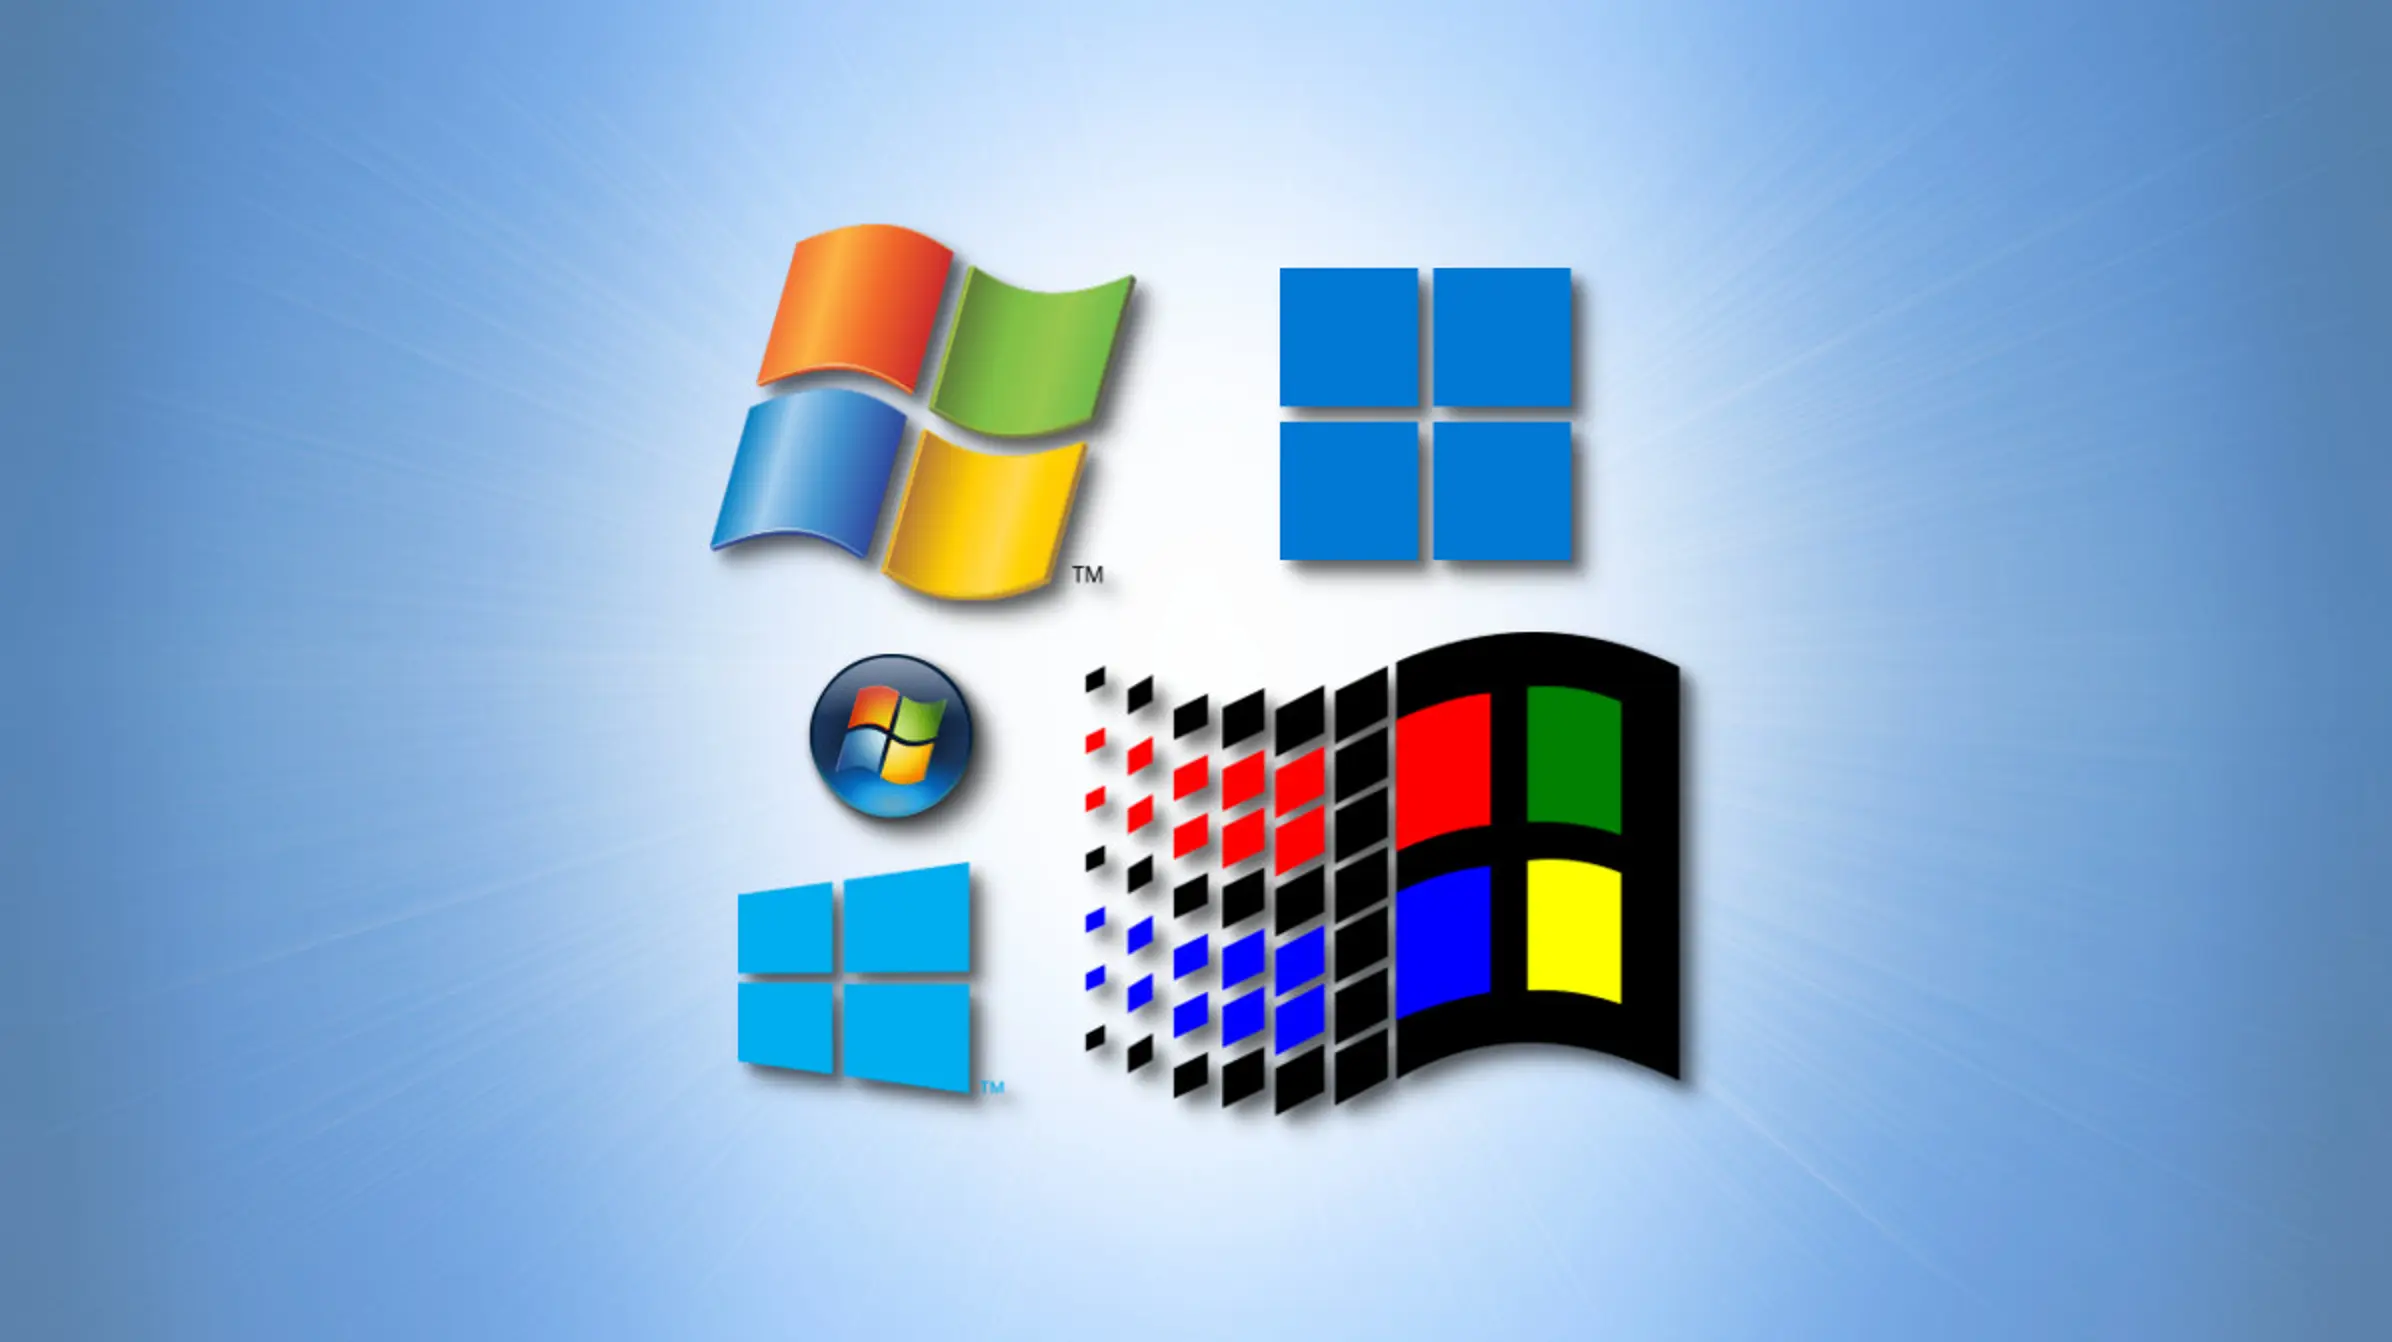 Windows Logos Over Time